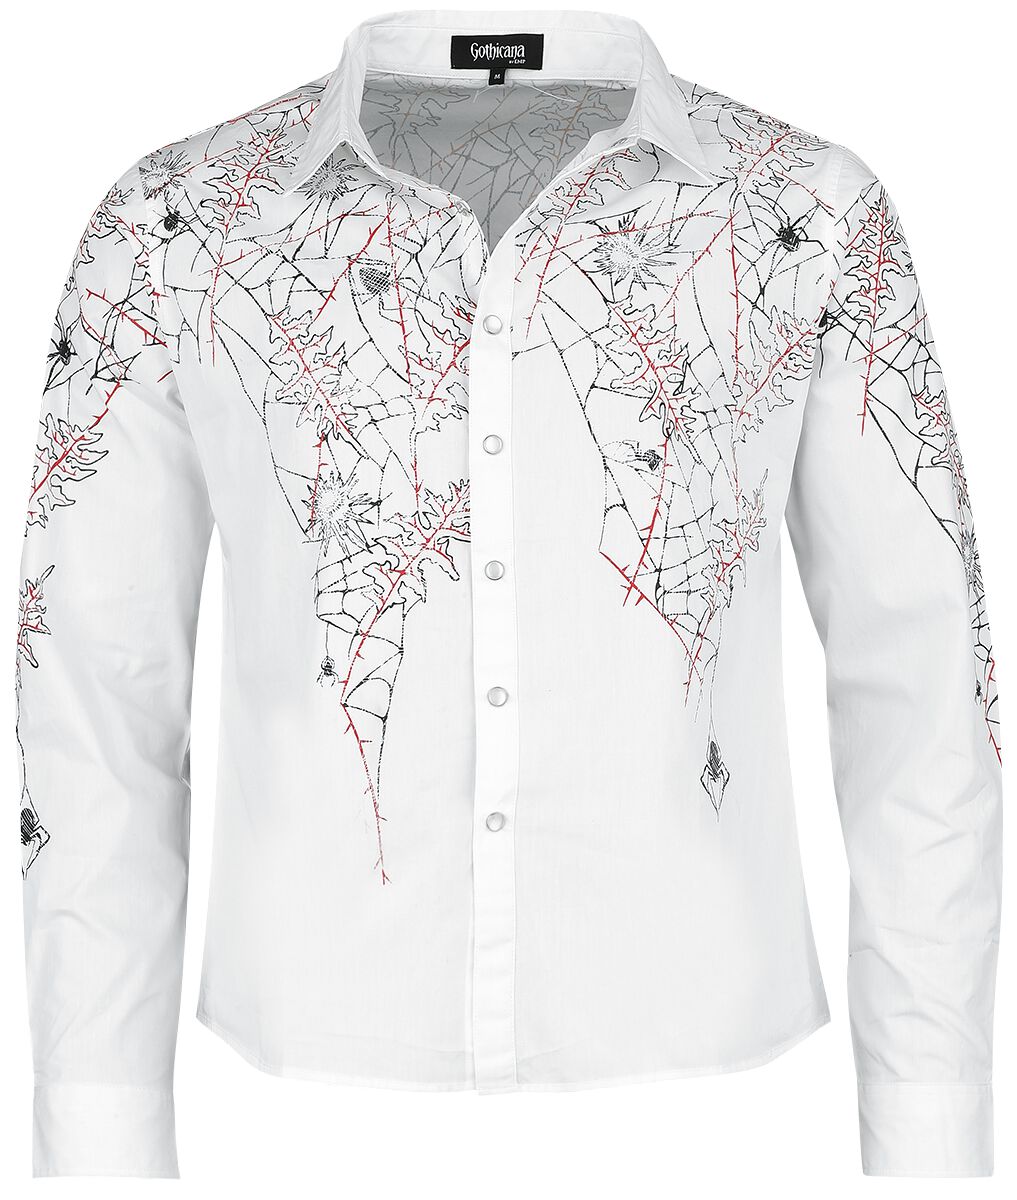 Gothicana by EMP - Gothic Langarmhemd - Shirt with Spiderweb Print - S bis XXL - für Männer - Größe XL - weiß